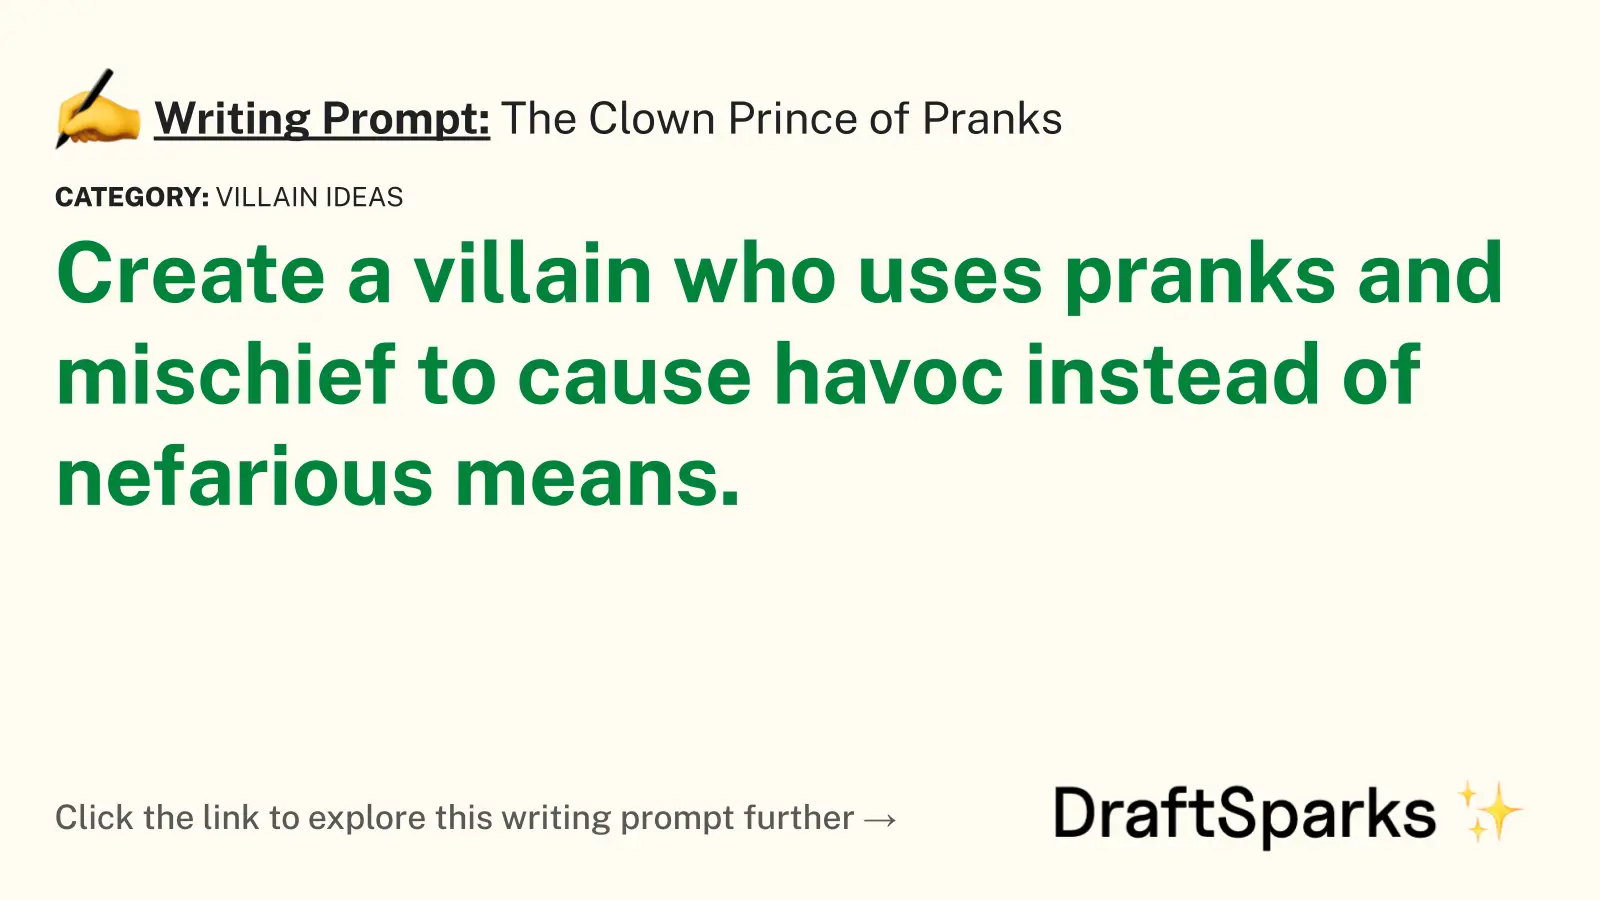 The Clown Prince of Pranks